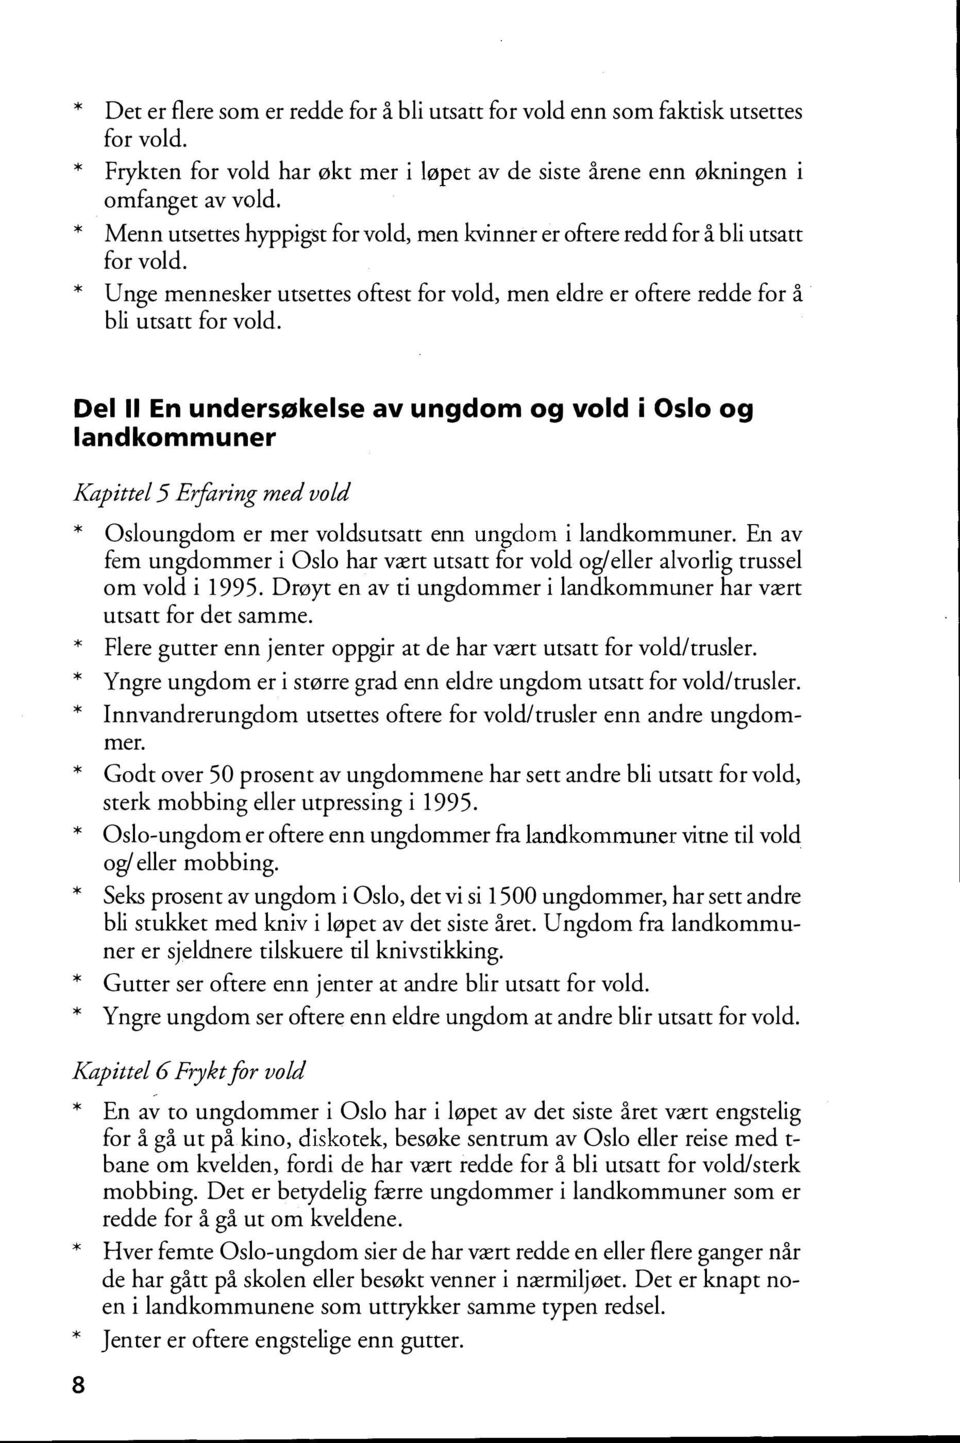 Del Il En undersøkelse av ungdom og vold i Oslo og landkommuner Kapittel 5 Erfaring med vold Osloungdom er mer voldsutsatt enn ungdom i landkommuner.